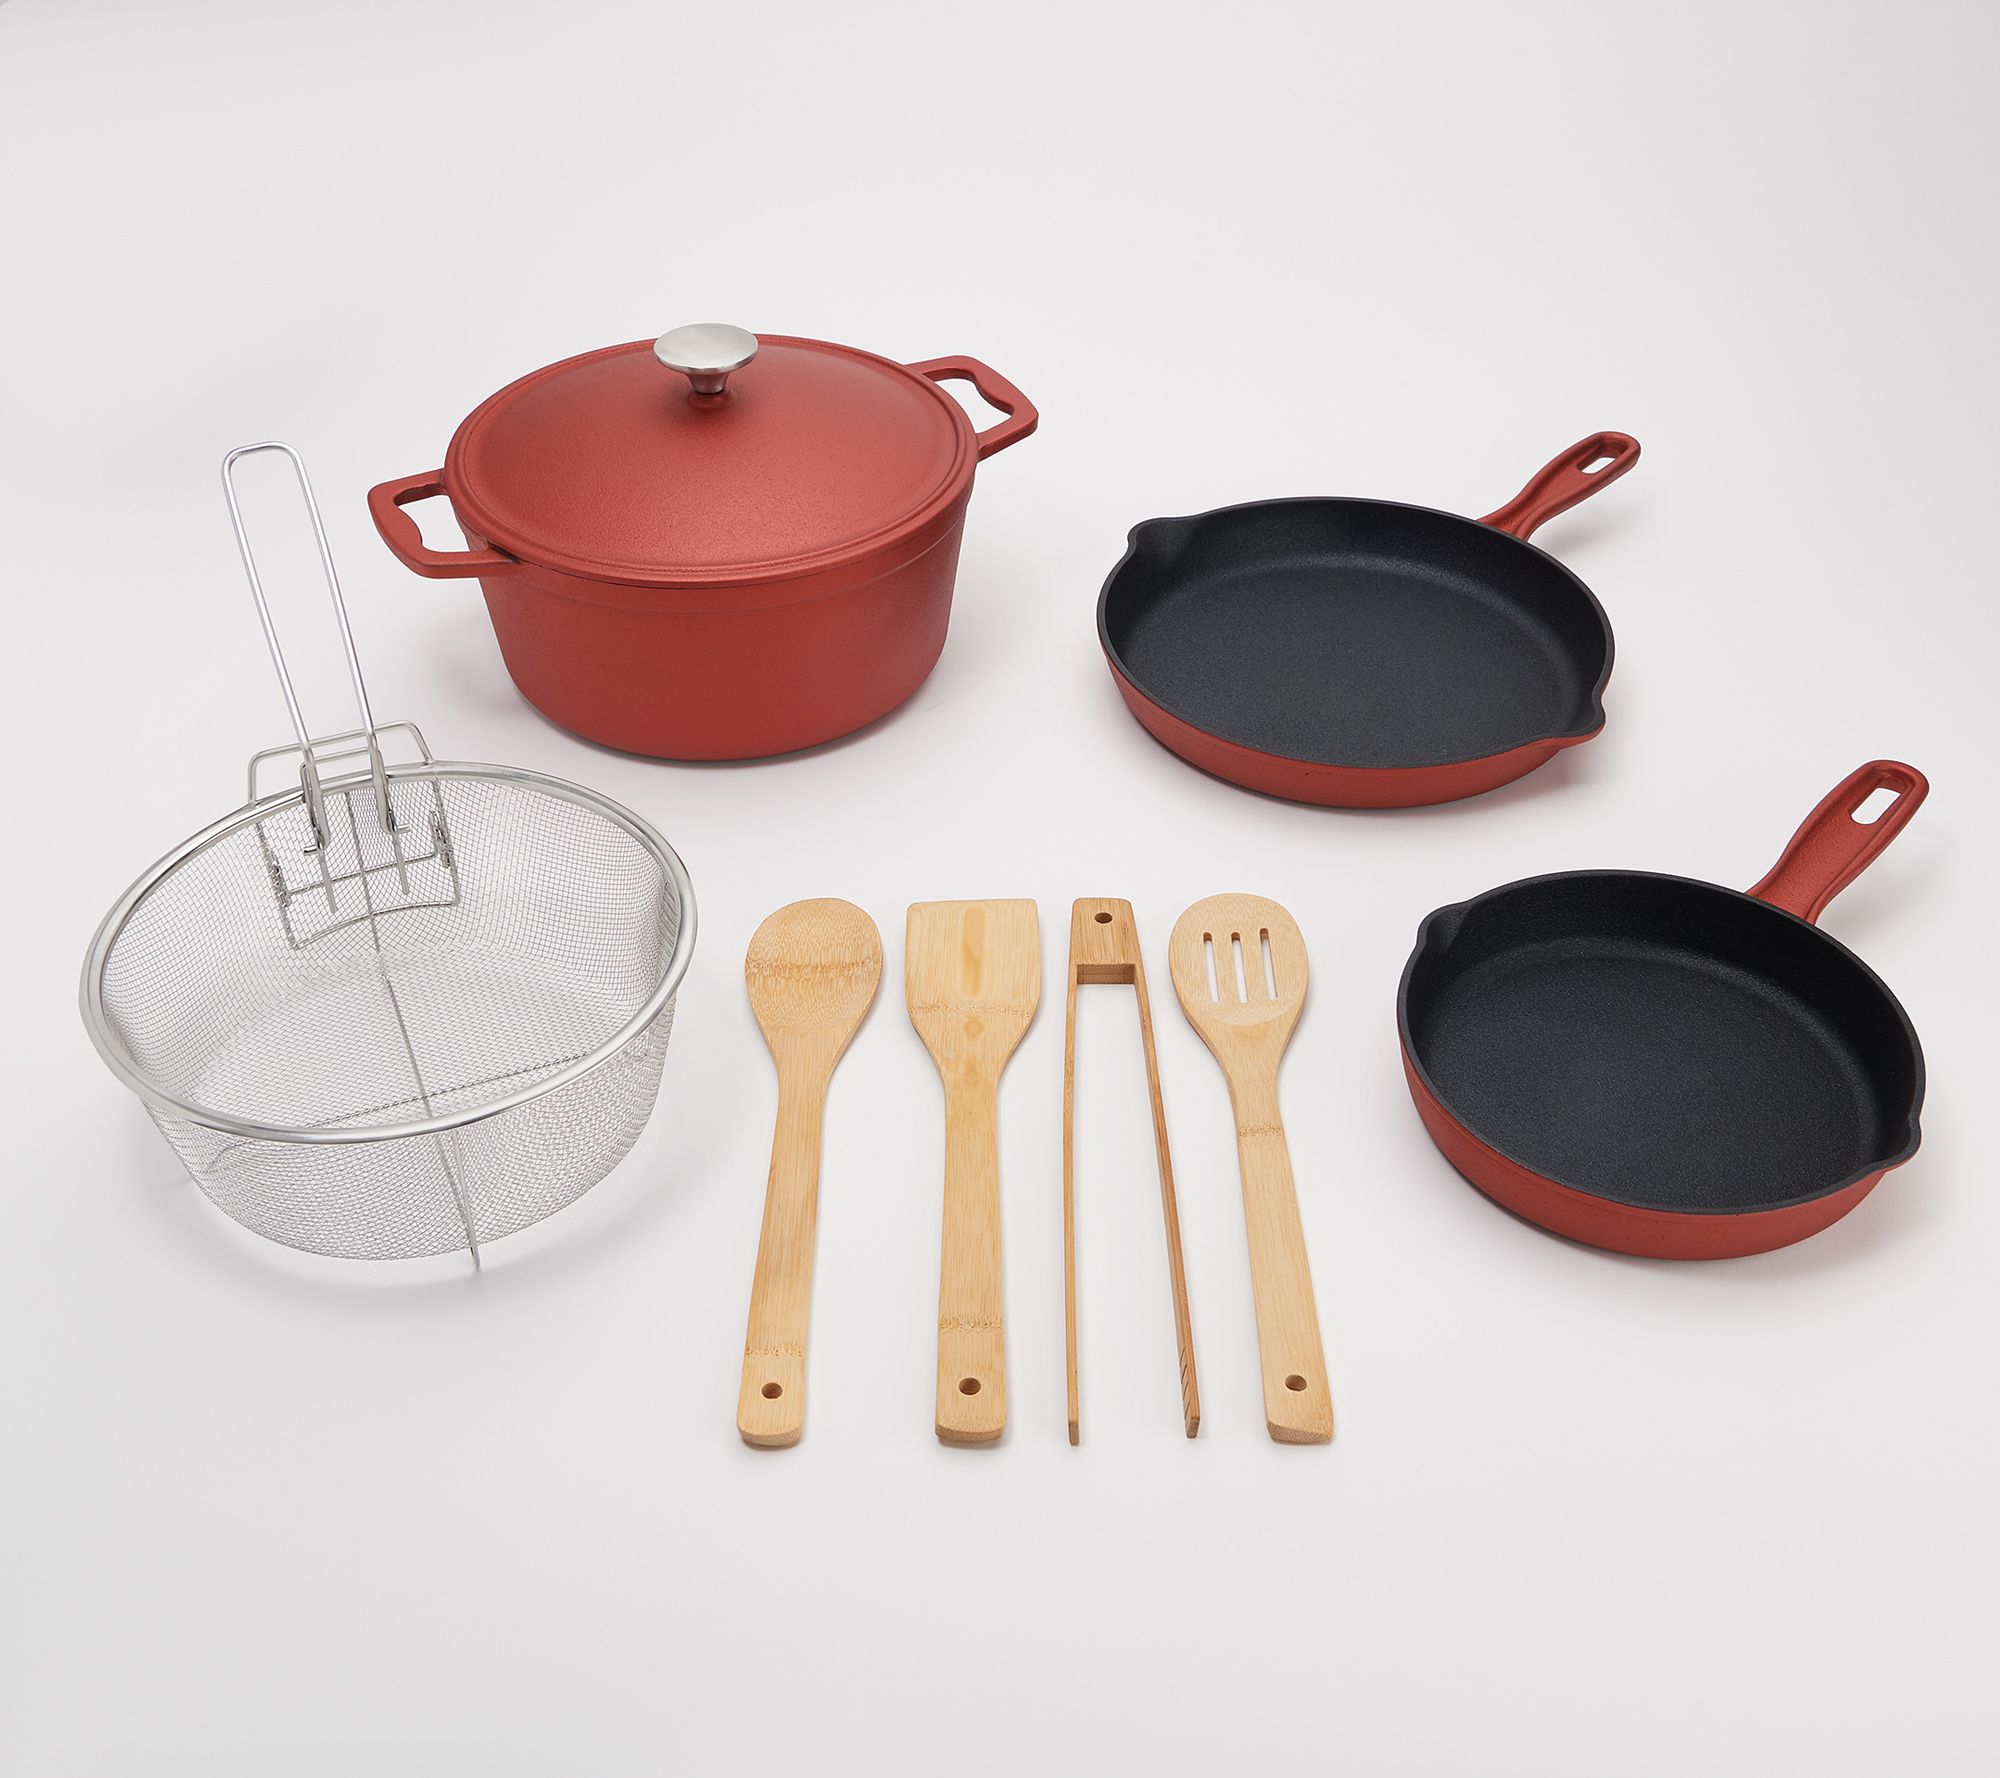 Cook's Essentials 8-Piece Cast-Iron Cookware Set - QVC.com